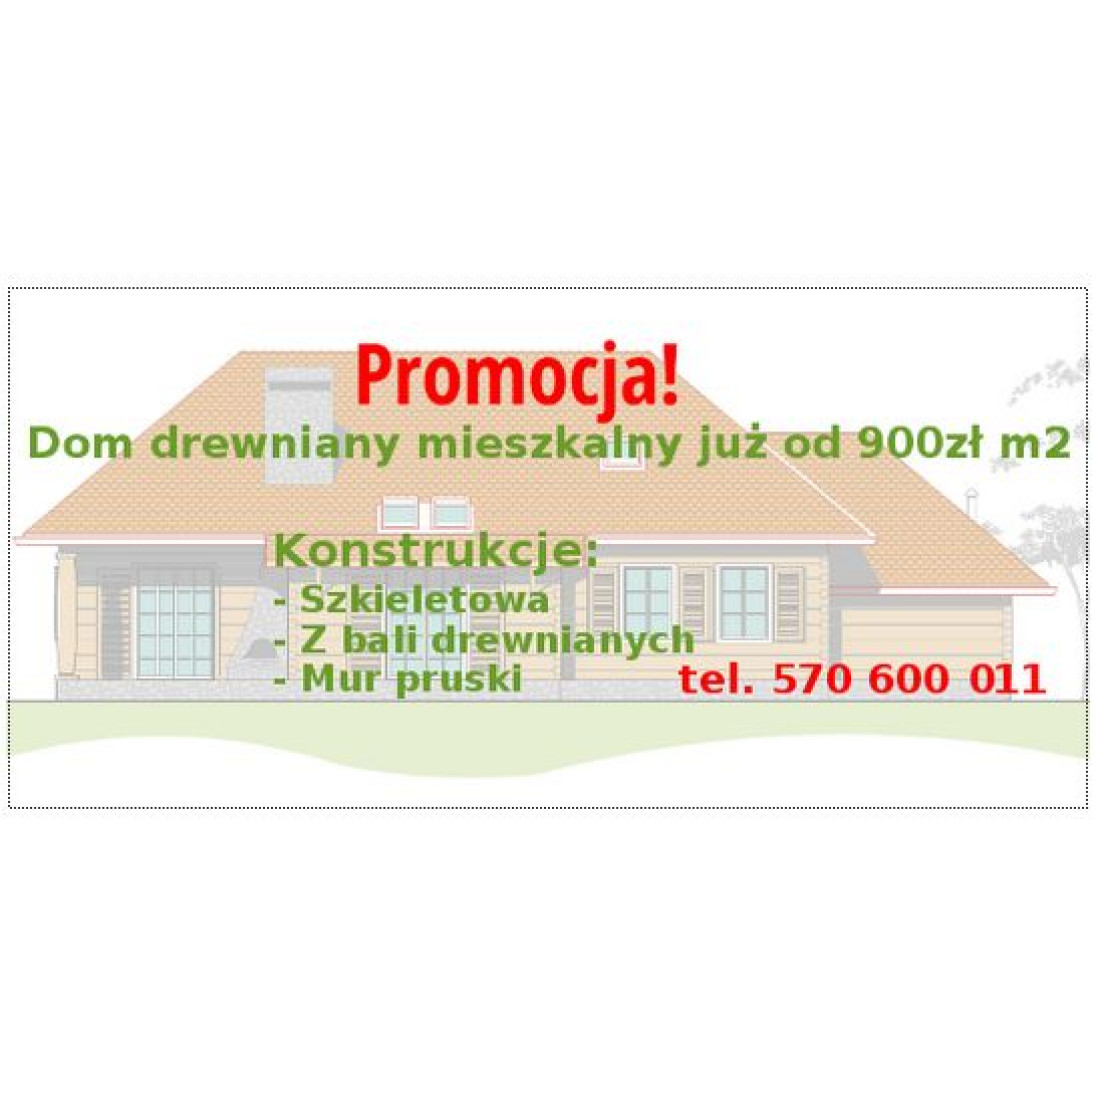 Promocja - dom drewniany mieszkalny już od 900 zł/m2